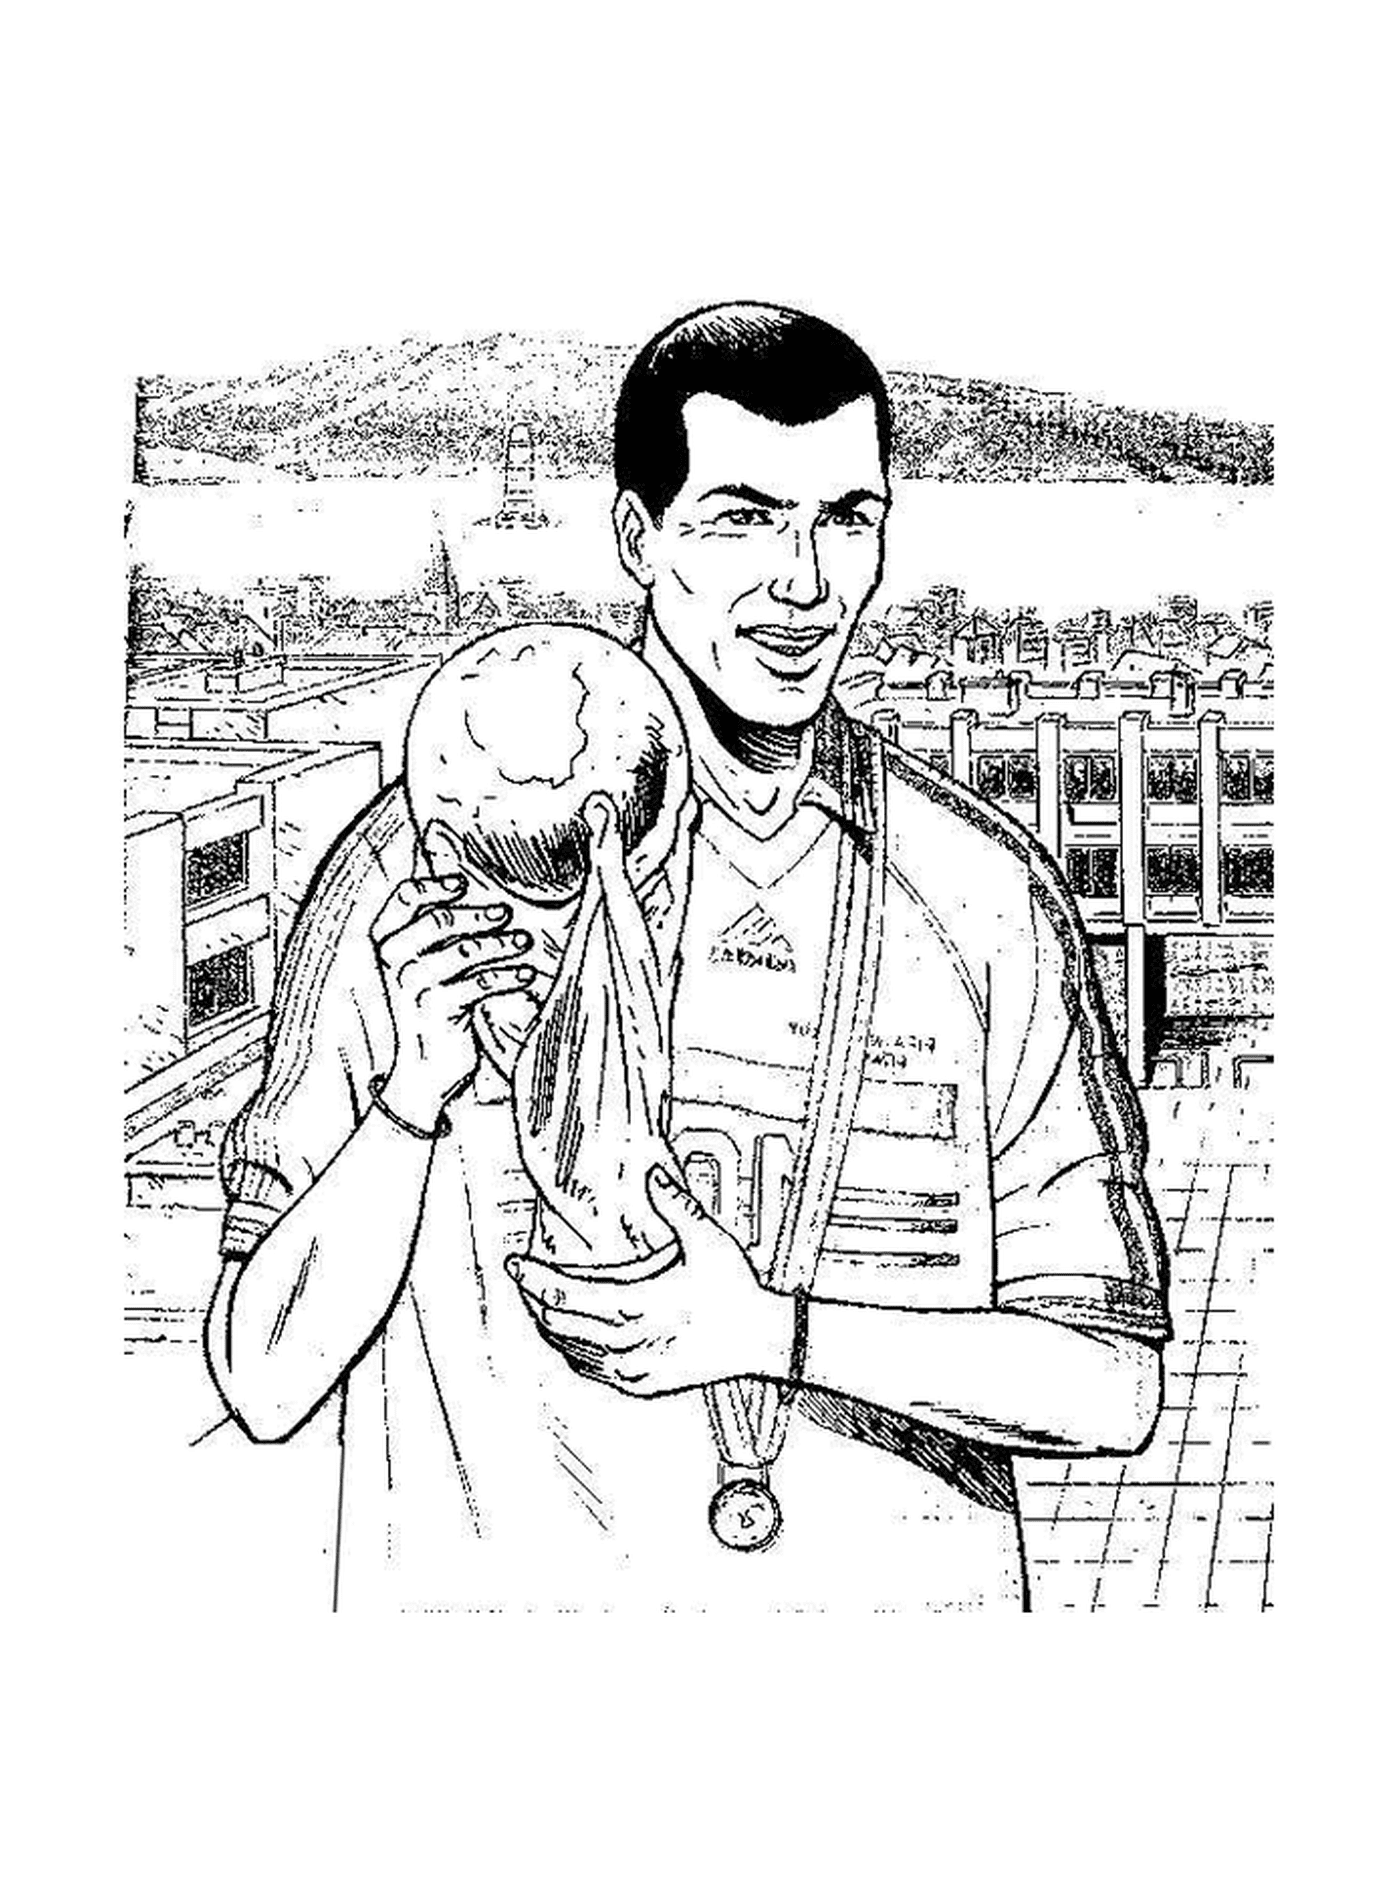   Zidane, le footballeur légendaire 